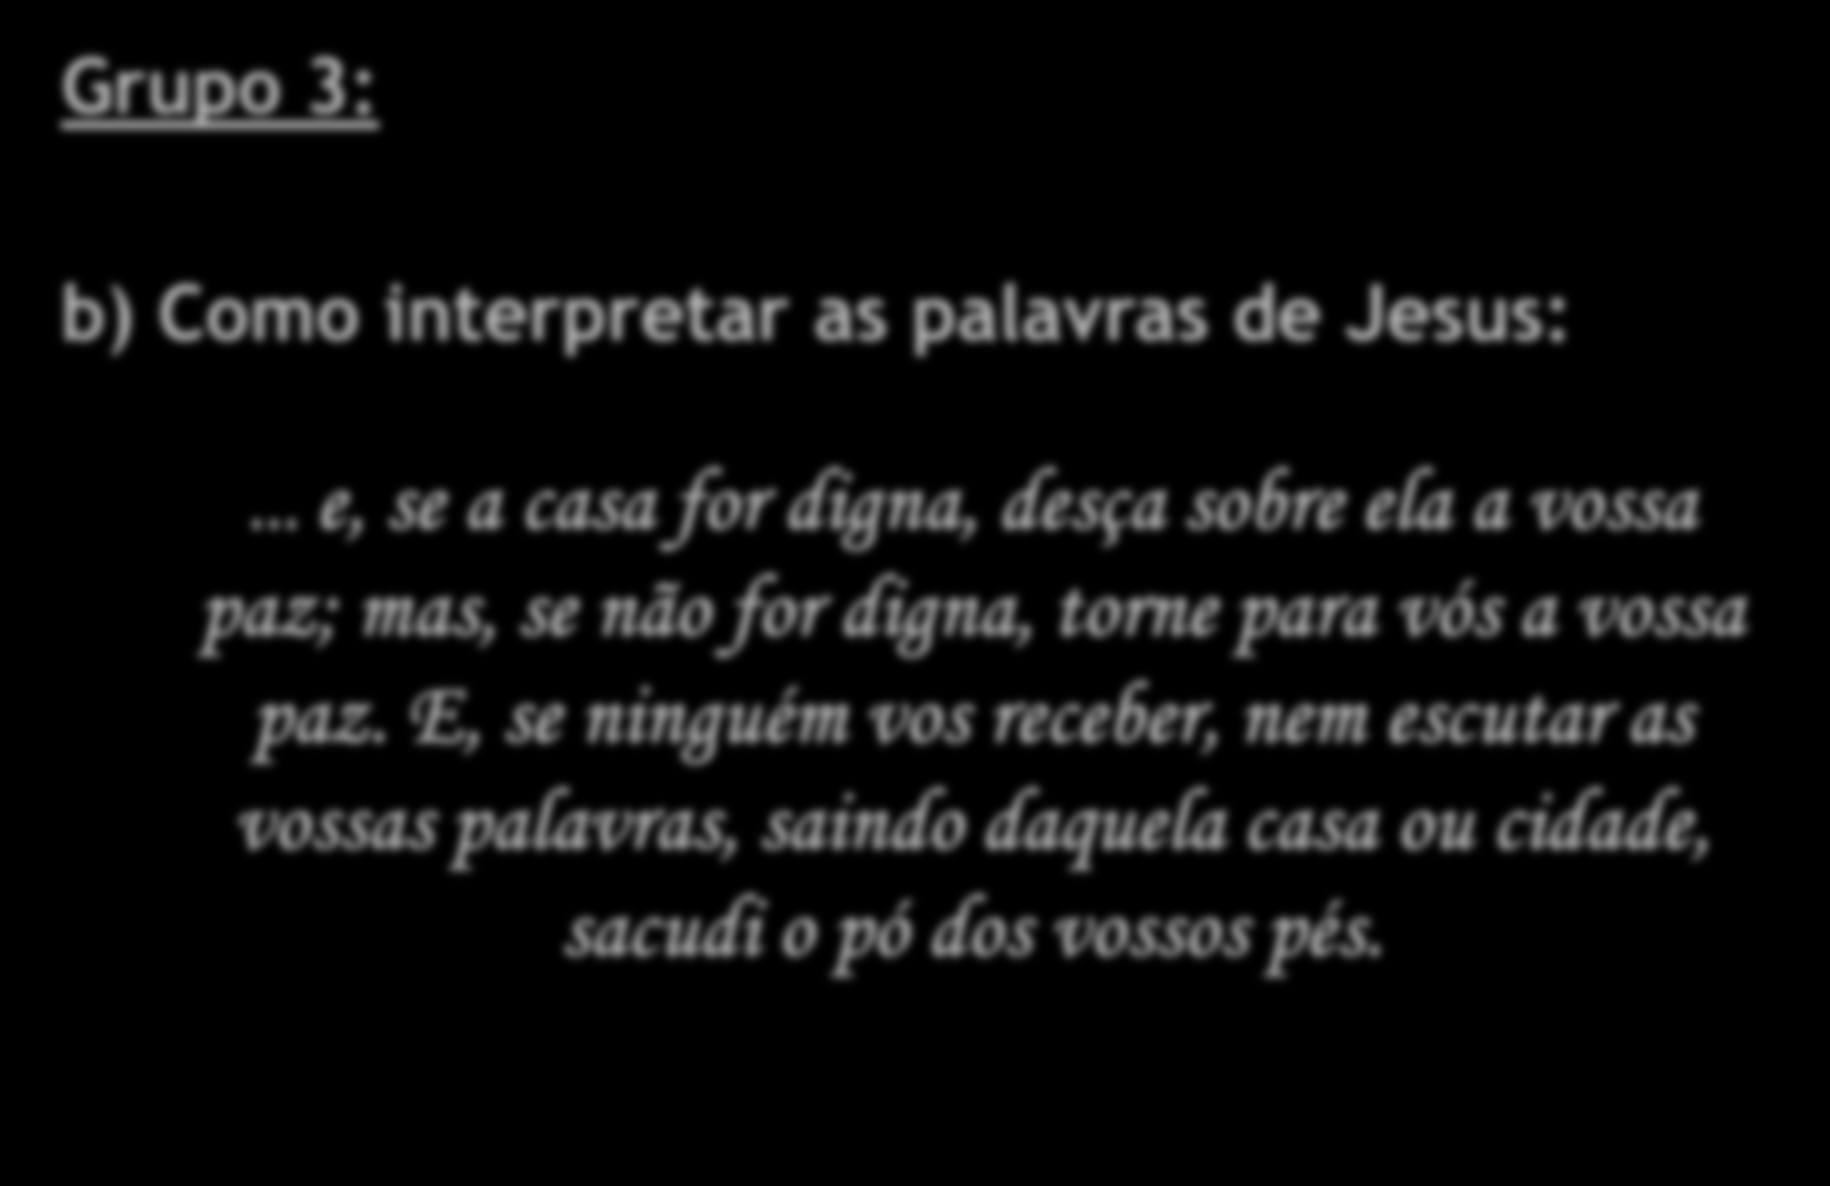 Grupo 3: b) Como interpretar as palavras de Jesus:.